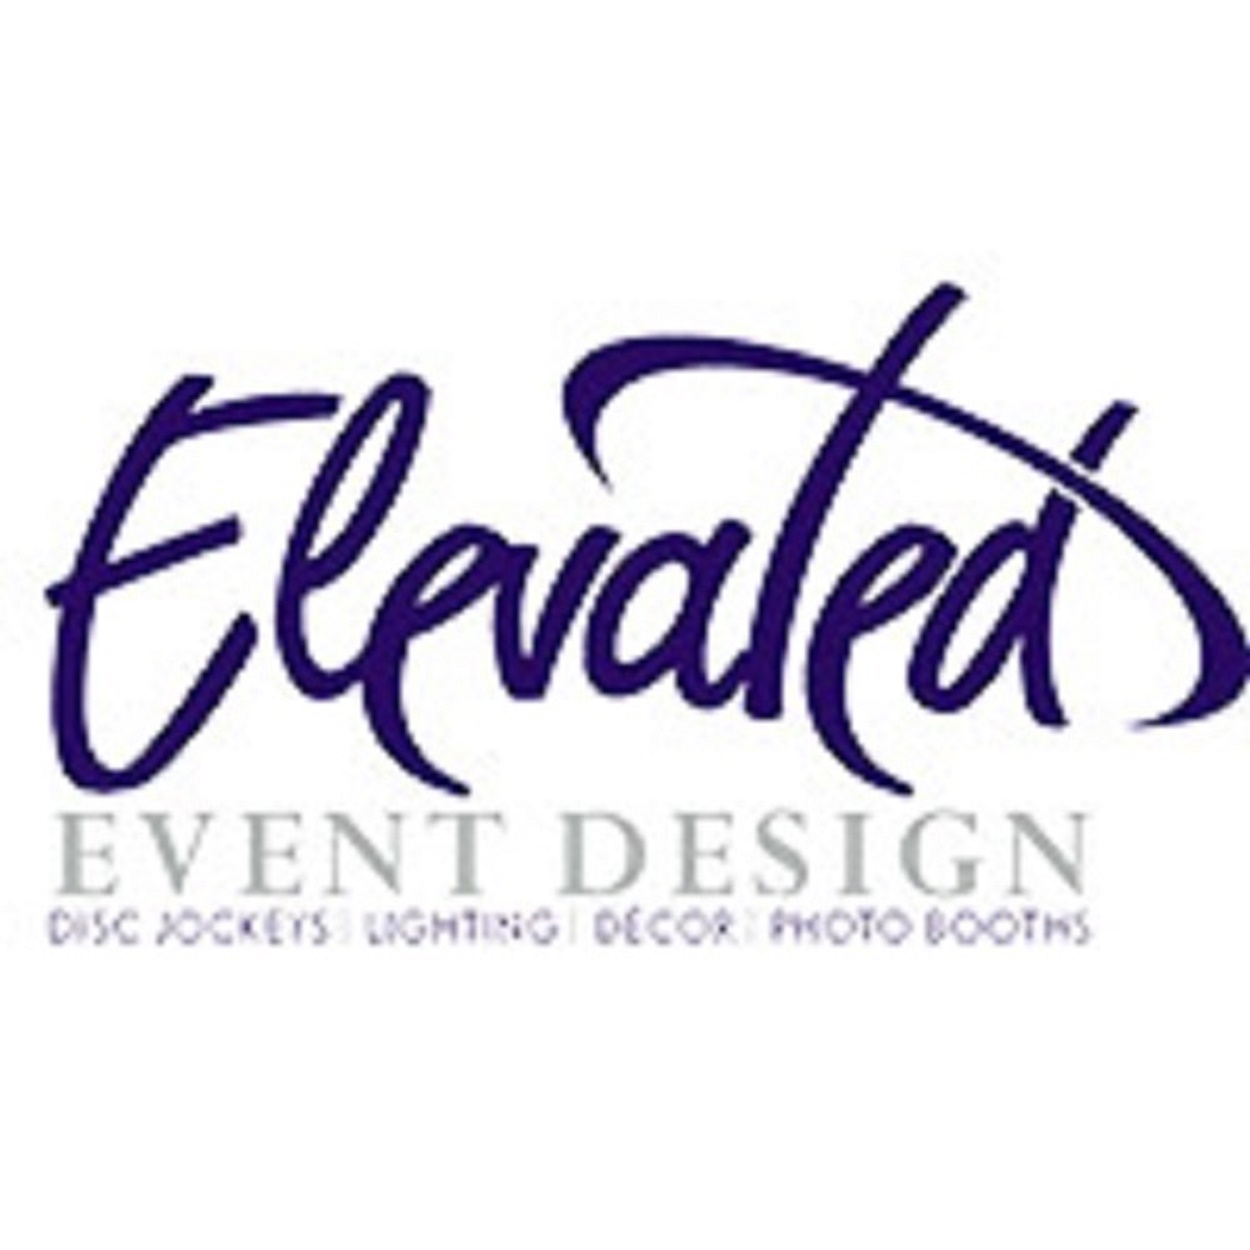 Elevated Event Design's Logo